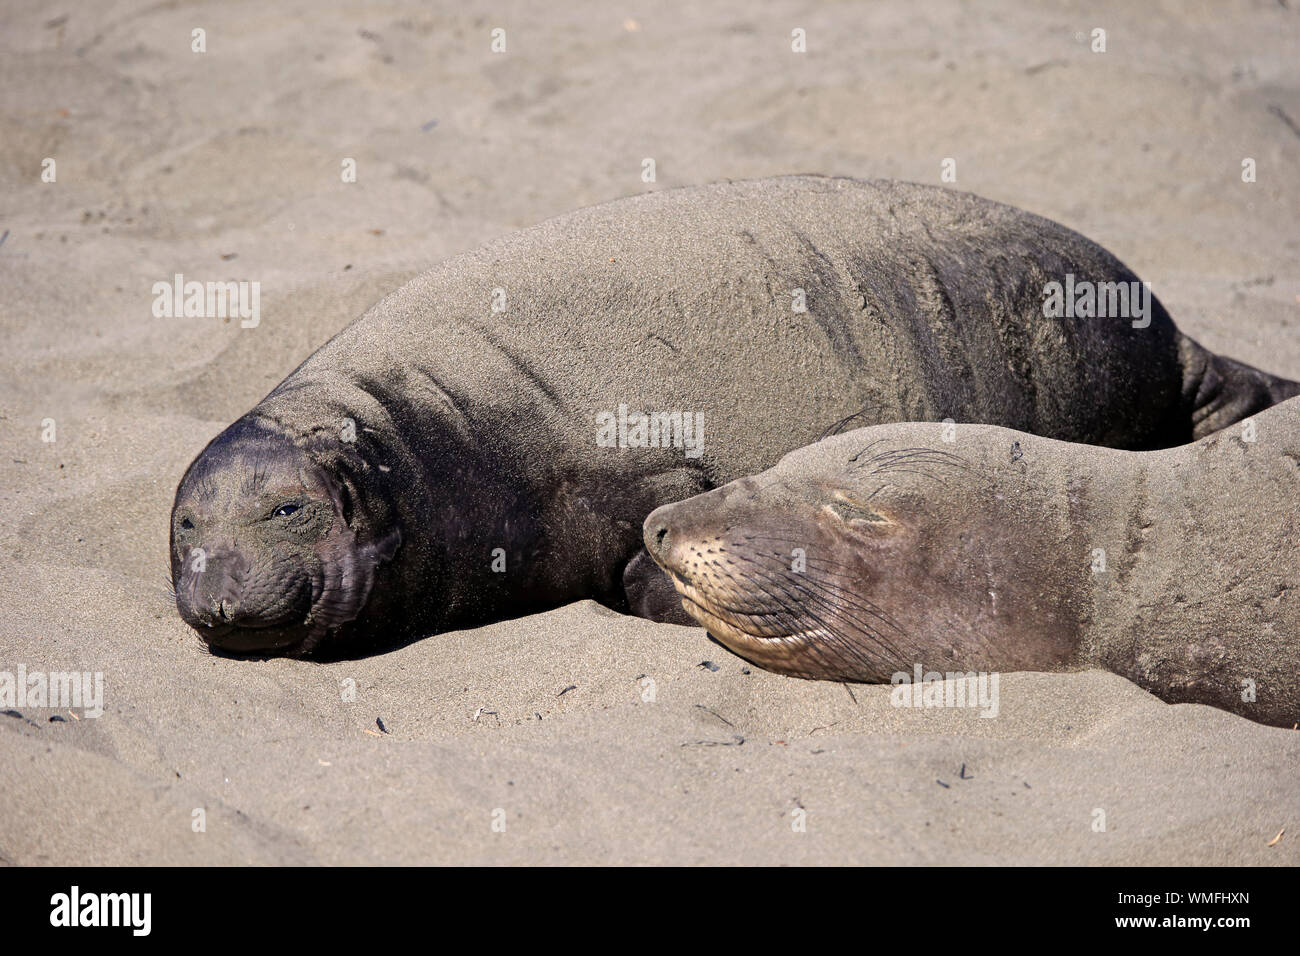 Northern Elephant Seal, female with young, Piedras Blancas Rookery, San Simeon, San Luis Obispo County, California, USA, (Mirounga angustirostris) Stock Photo